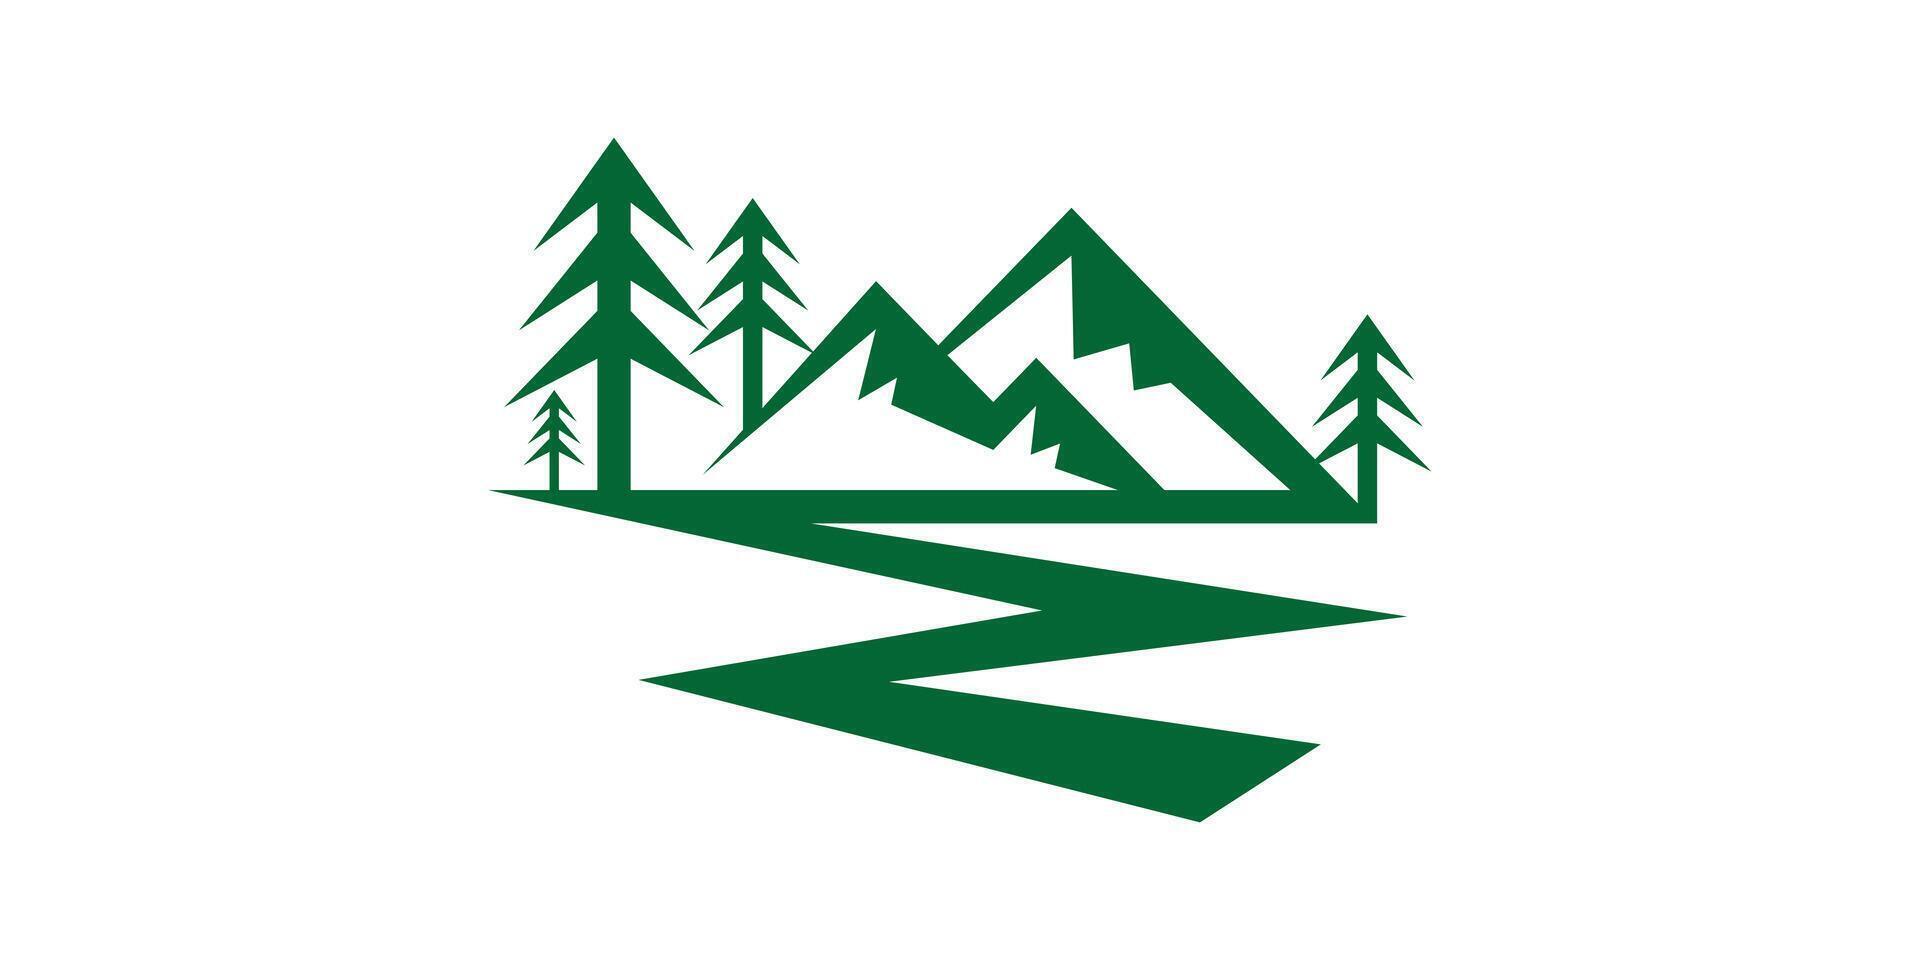 creative mountain logo design, outdoor, adventure, logo design template, symbol, icon, , creative idea. vector